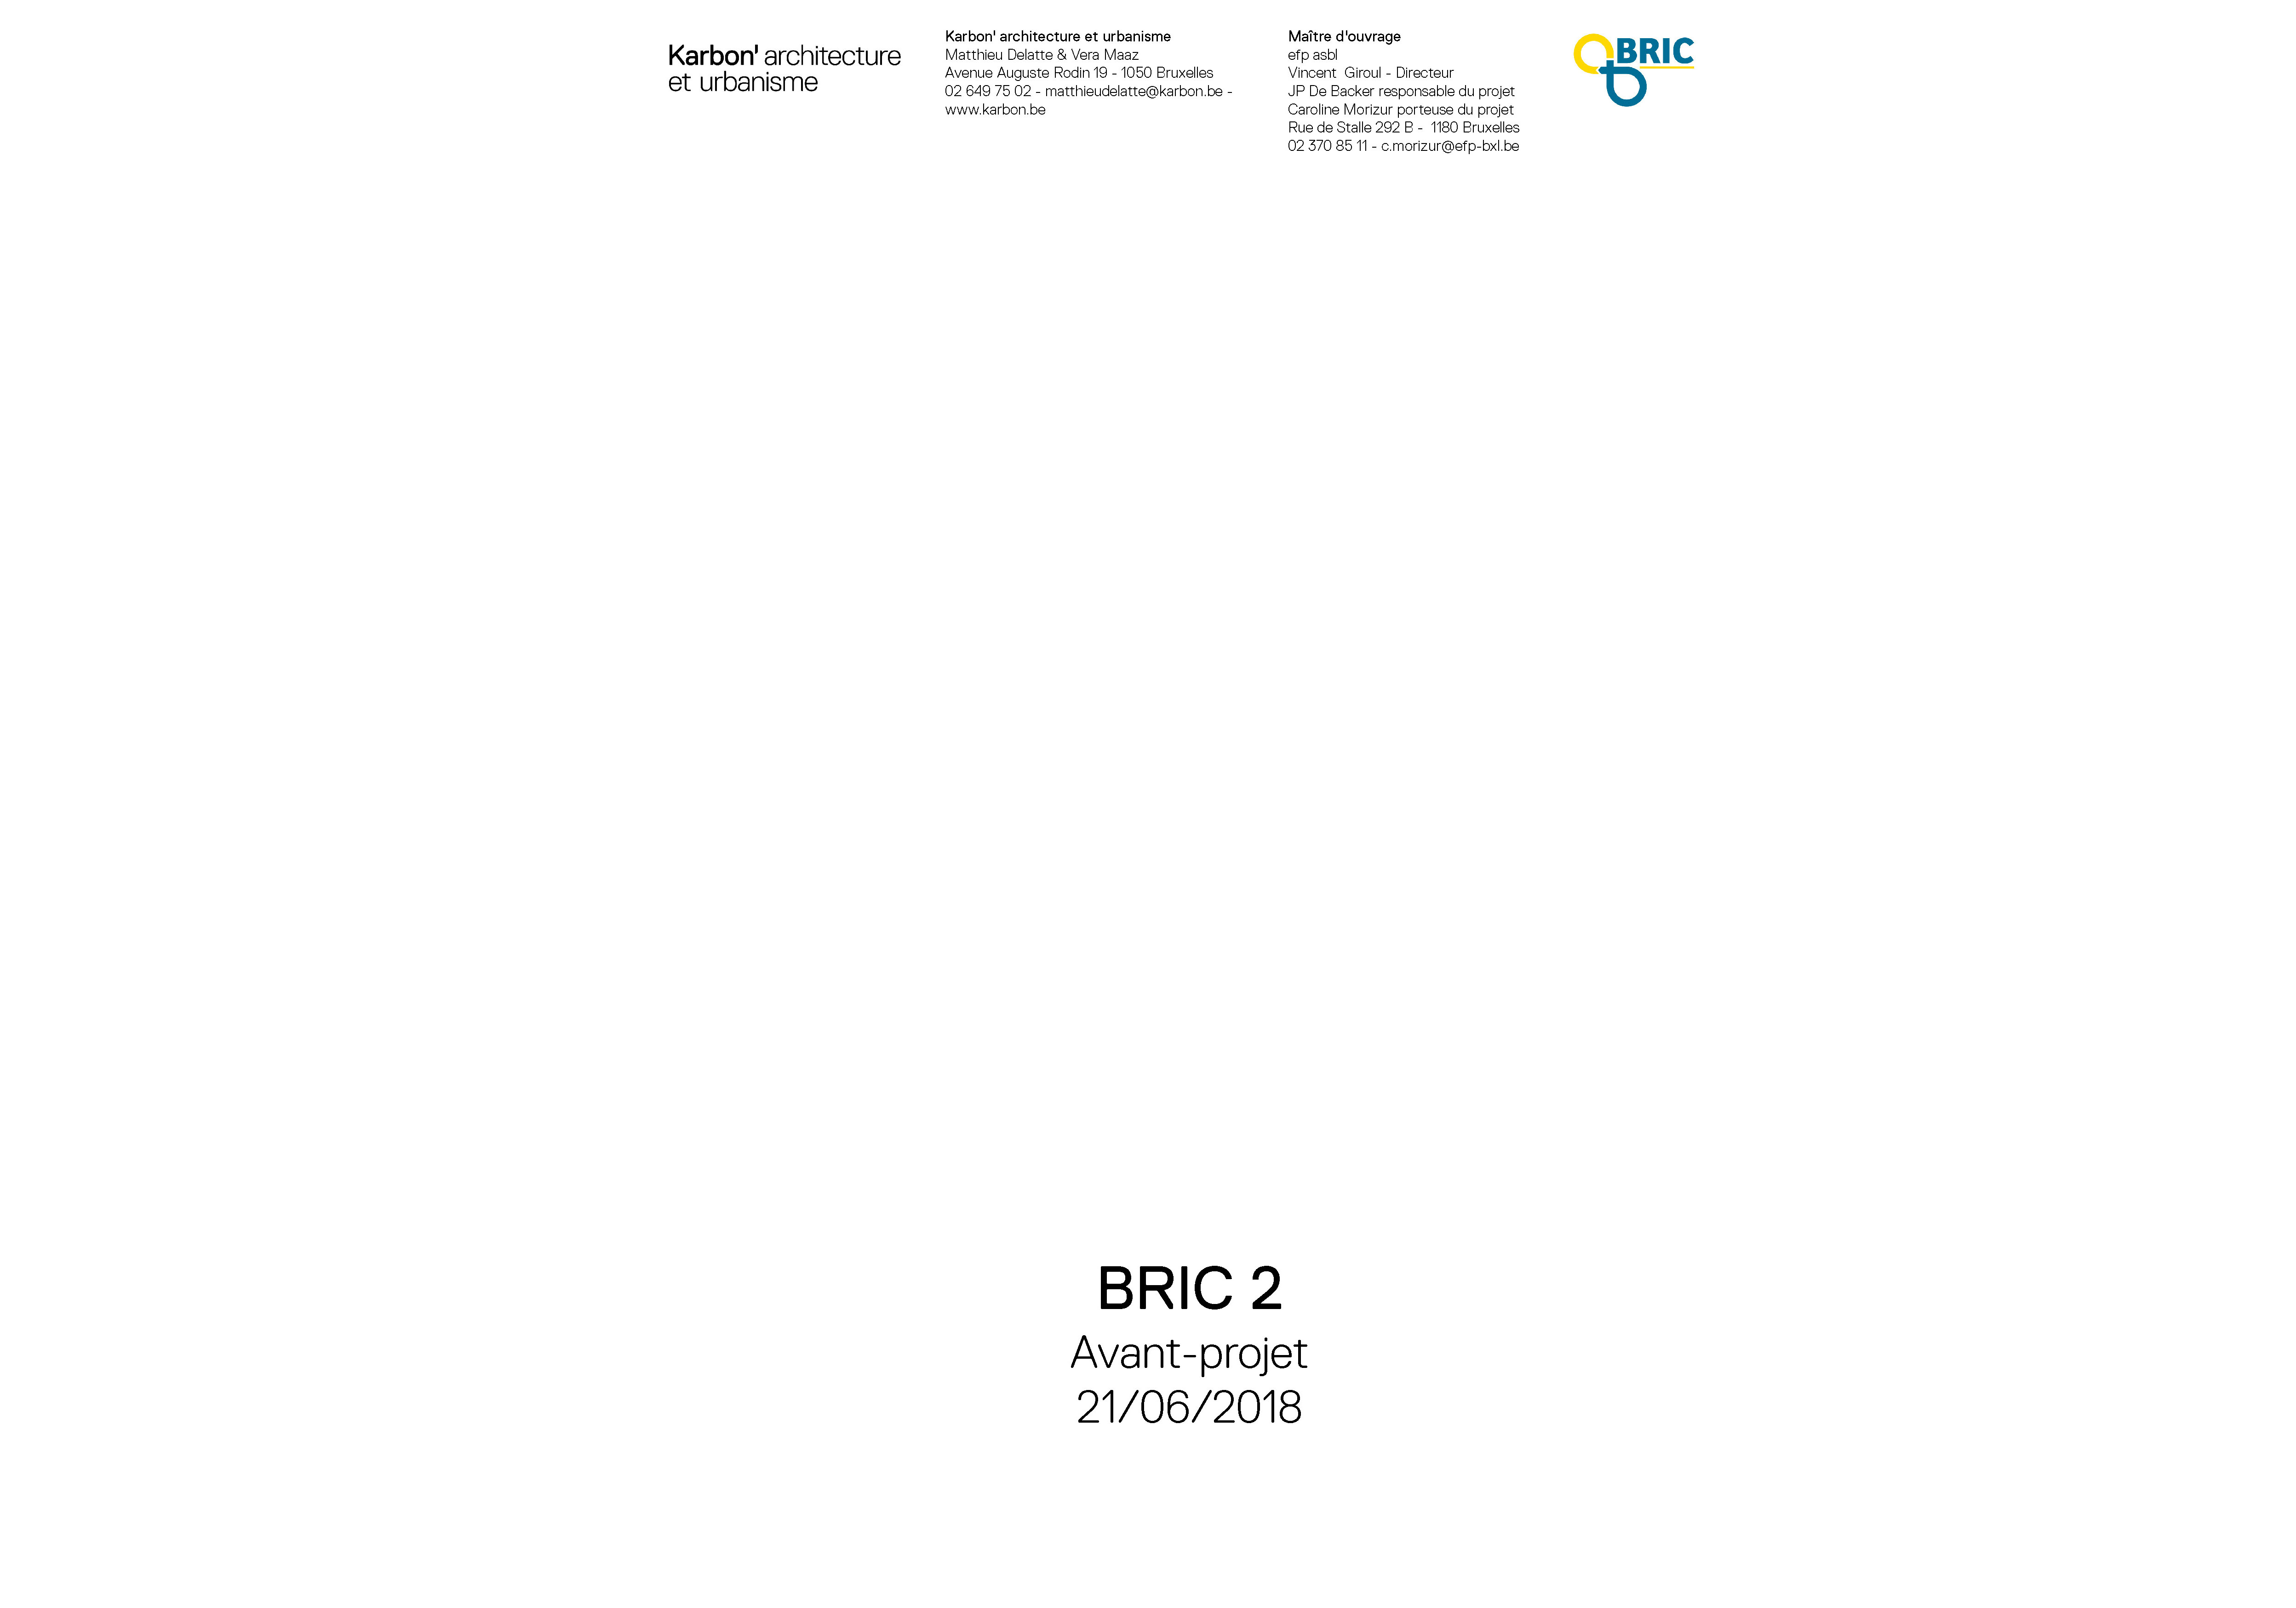 BRIC 2 01